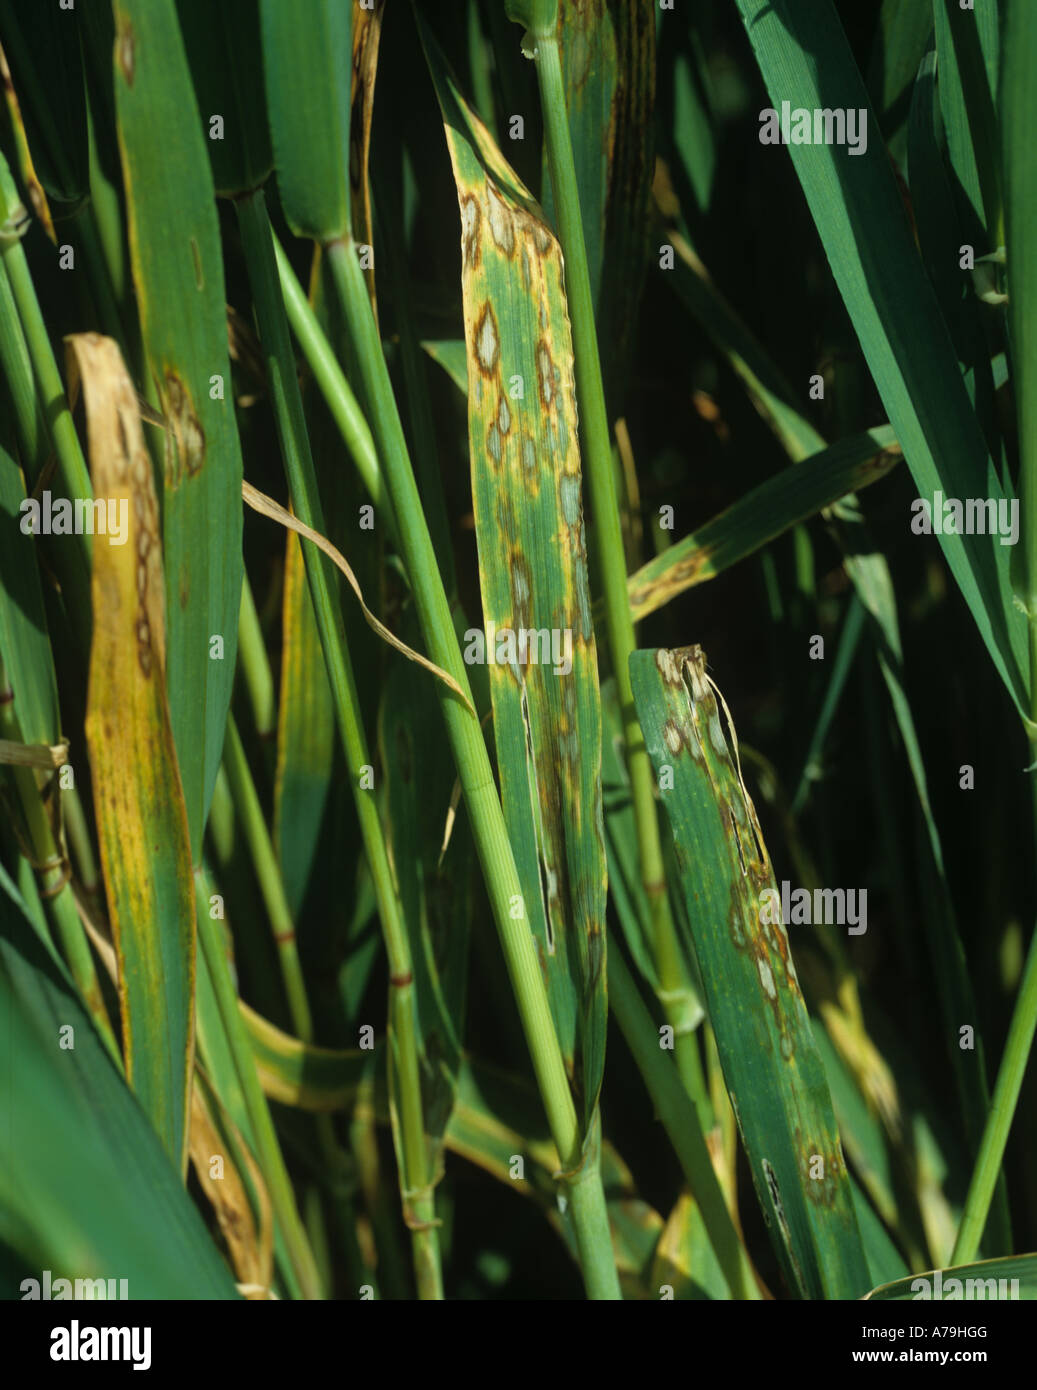 Barley leaf blotch Rhynchosporium secalis leaf lesions on a maturing barley crop Stock Photo